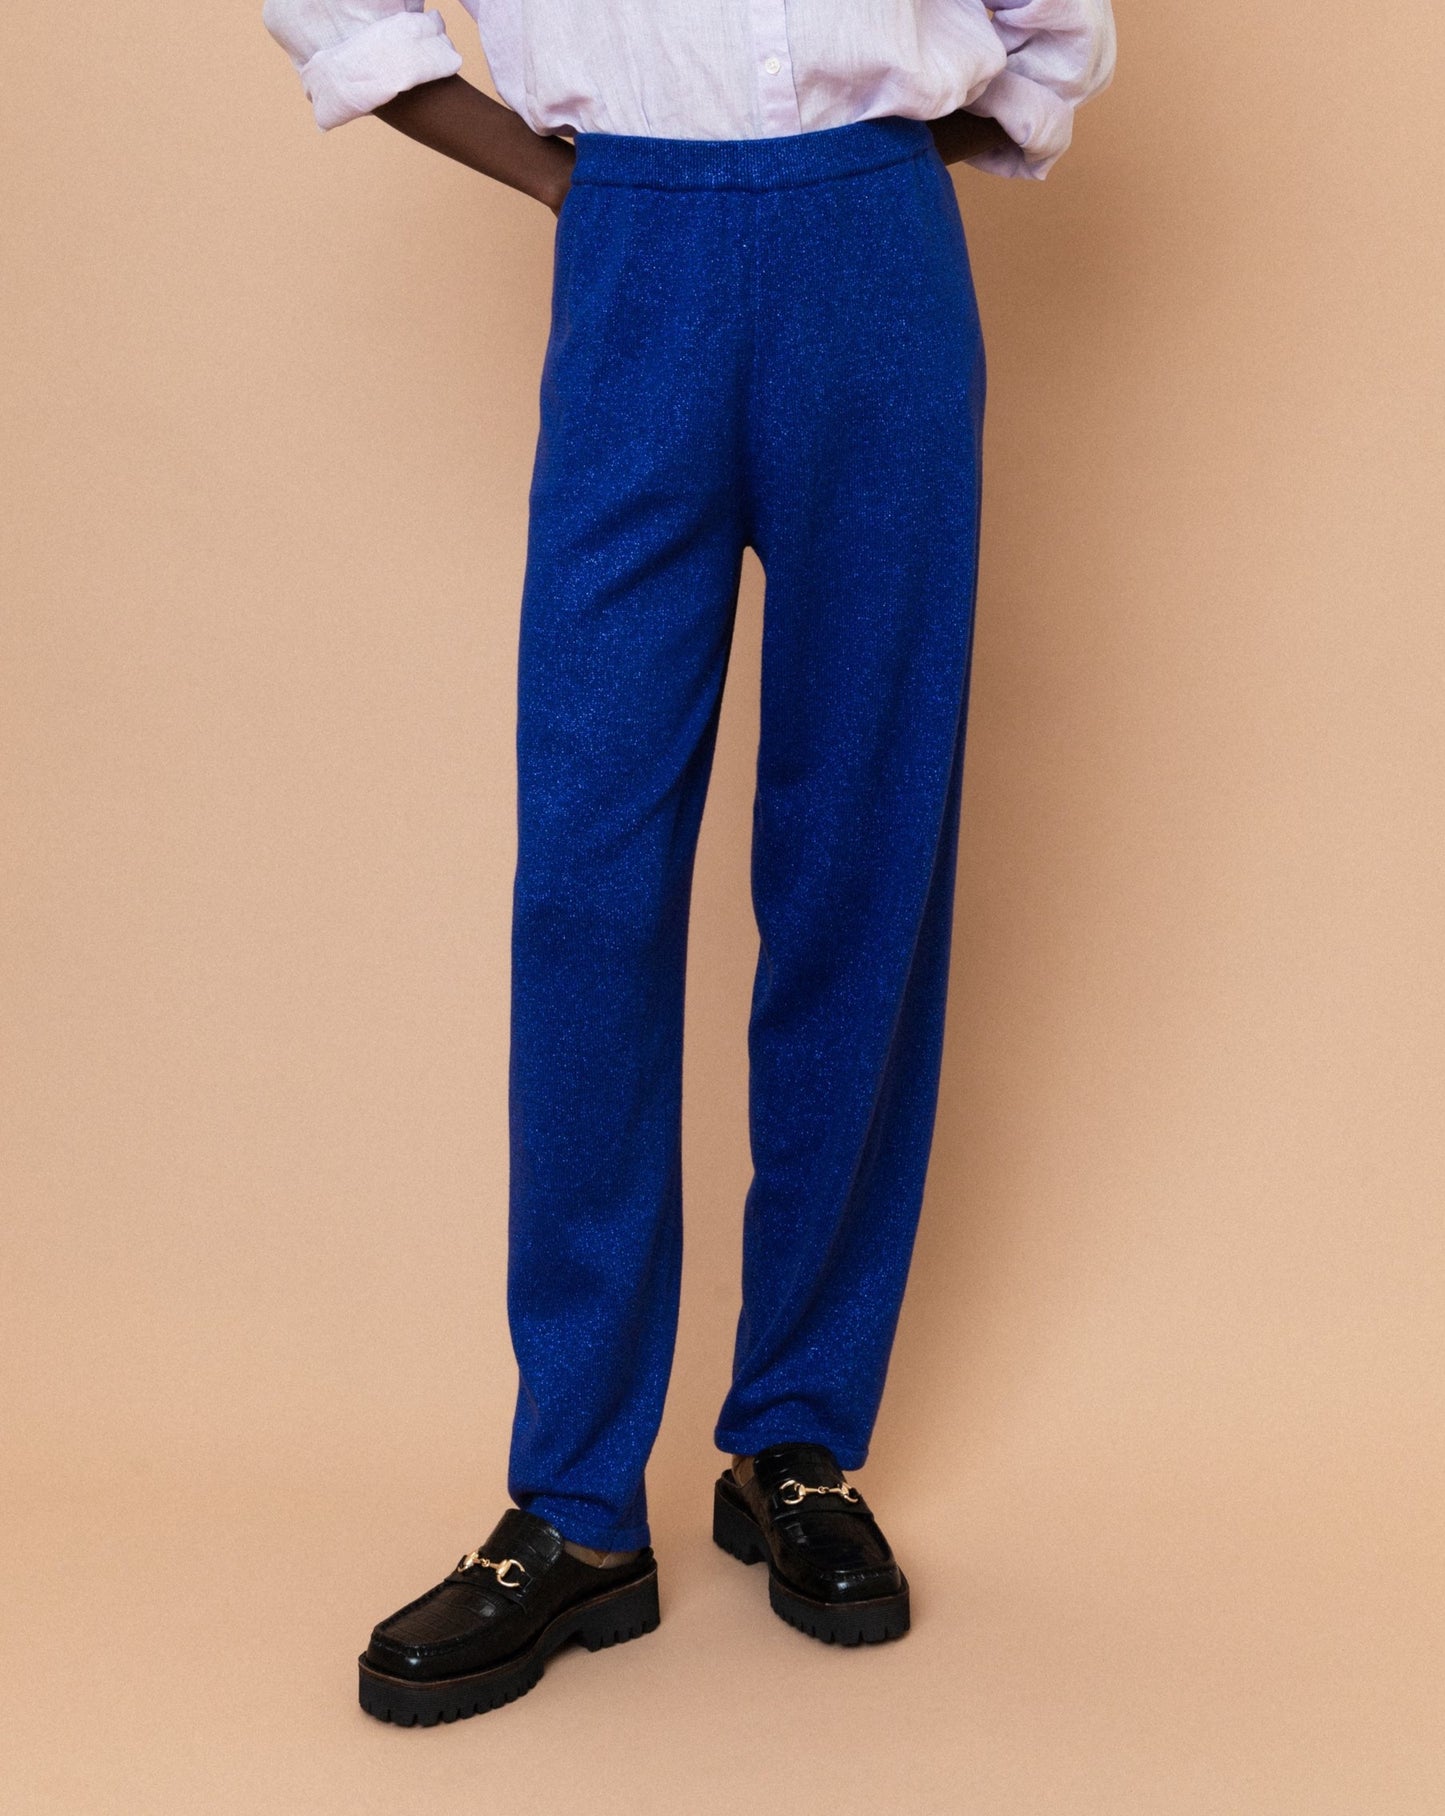 Vintage Sparkly Blue Elastic Pants (M)